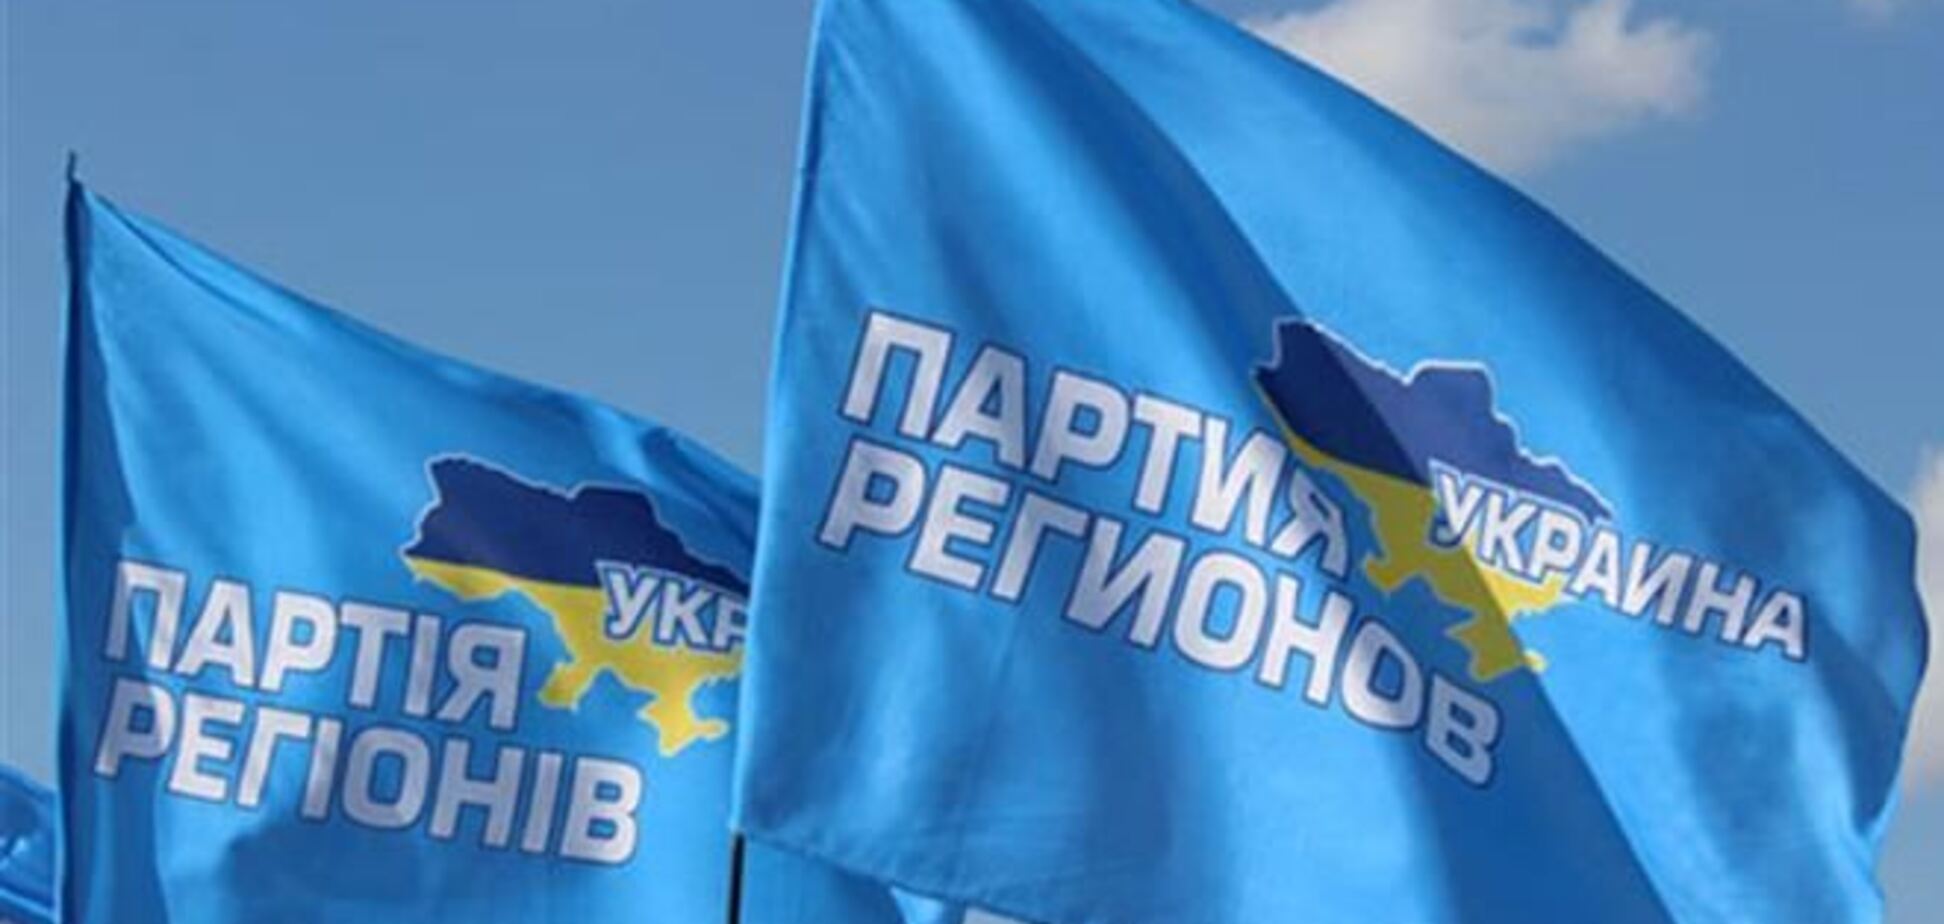 Луганские регионалы требуют освободить Добкина и Клинчаева